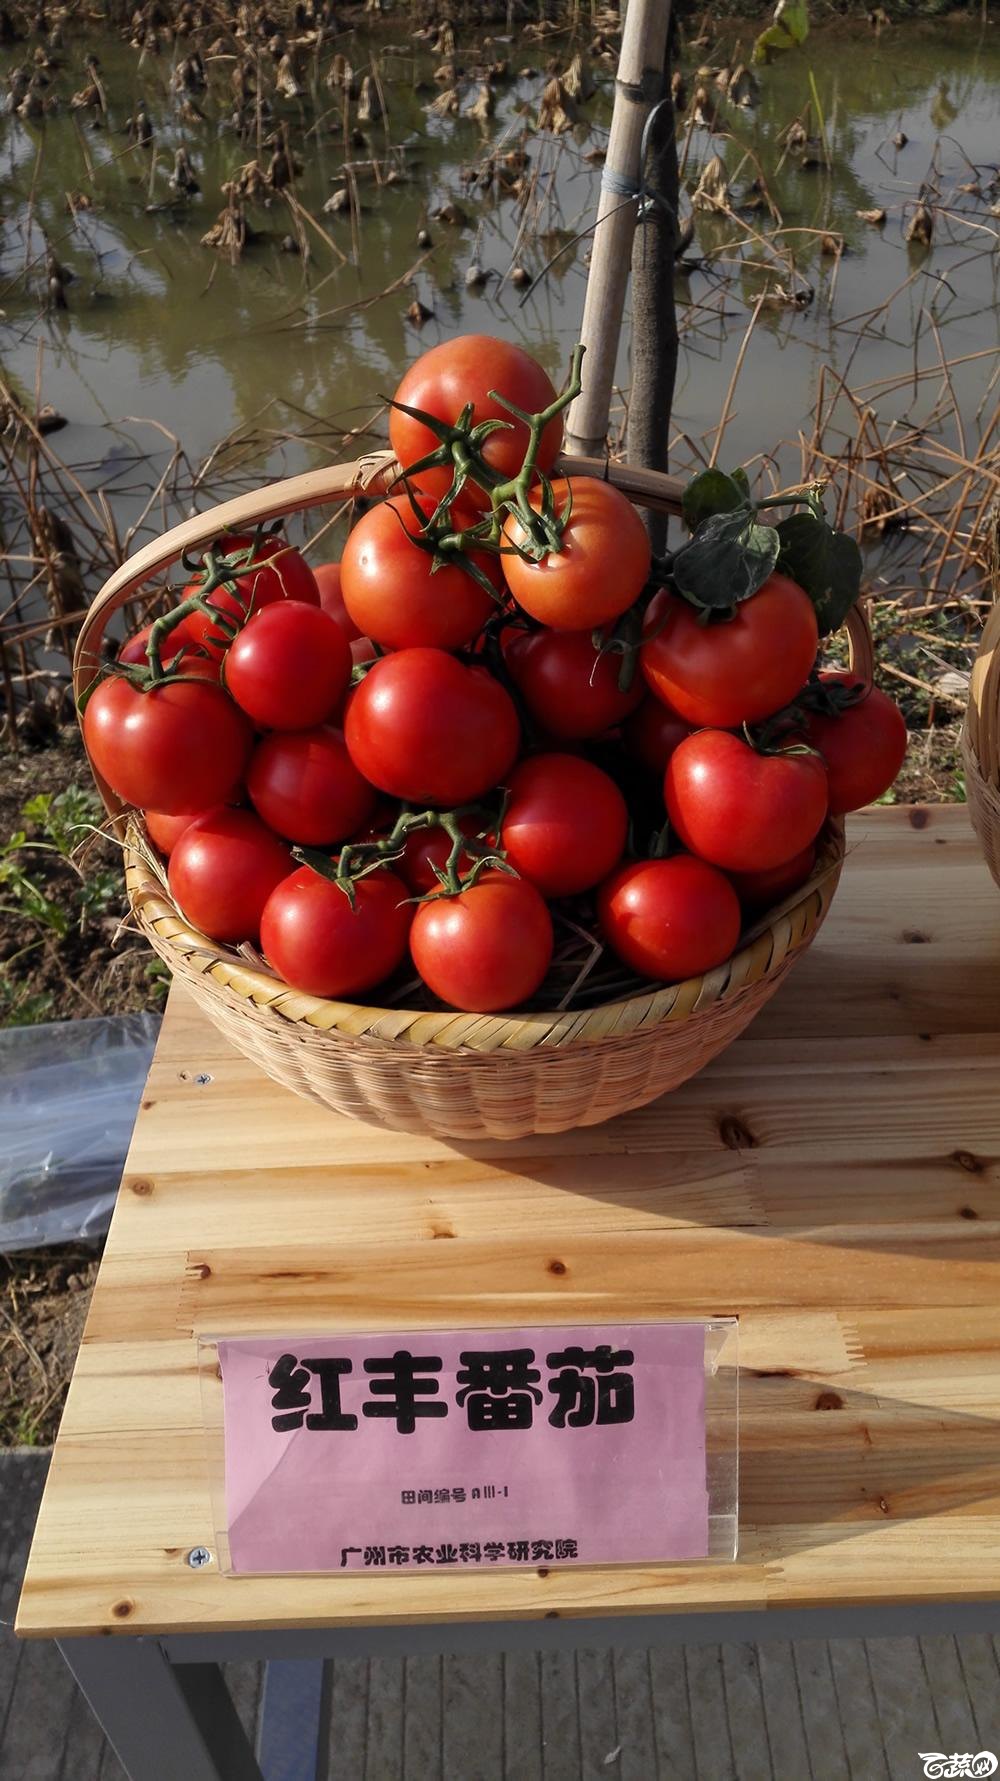 2014年12月10号广州市农科院南沙秋季蔬菜新品种展示会_番茄_005.jpg